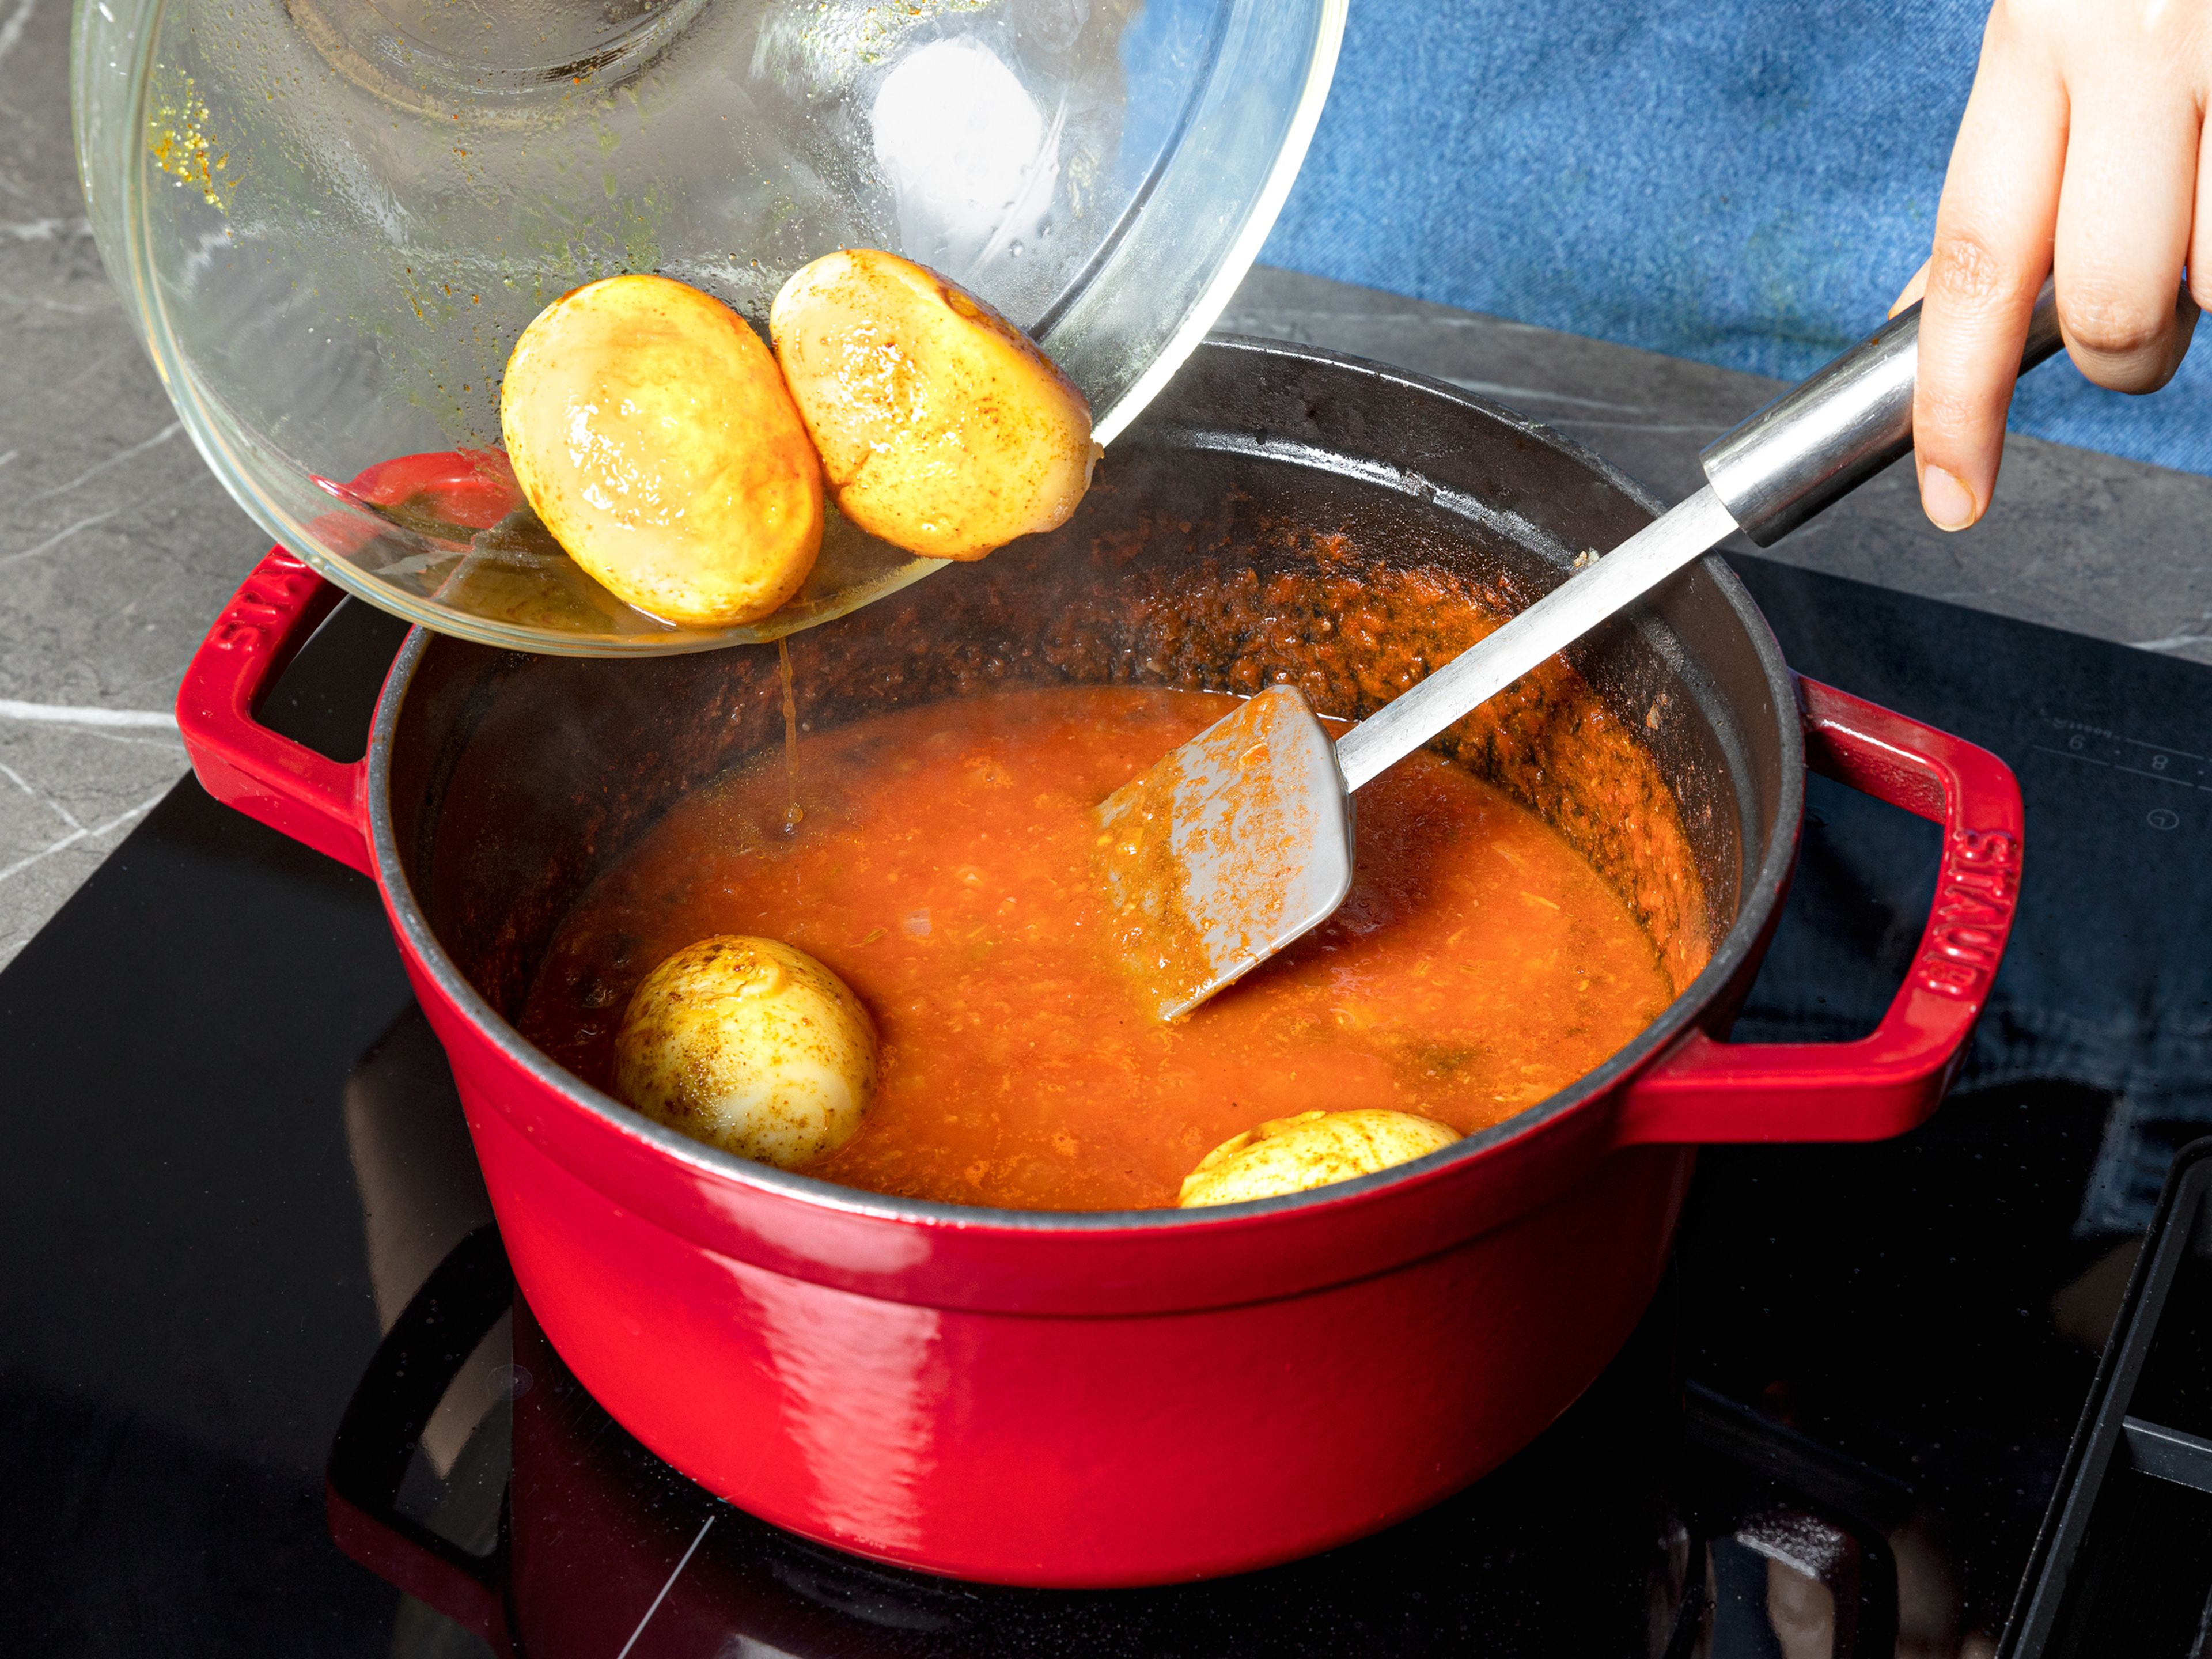 Mit stückigen Tomaten und Wasser ablöschen. Leicht köcheln lassen und bei mittlerer Hitze ca. 12–15 Min. einkochen lassen. Falls das Curry zu trocken ist, mehr Wasser hinzufügen. Garam Masala und den größten Teil der Eier in das Curry geben, darauf achten, dass sie bedeckt sind und weitere 2–3 Min. kochen. Wenn das Curry fertig ist, zwei restliche Eier halbieren und das Curry mit diesen und Koriander garnieren. Mit gekochtem Basmatireis servieren.